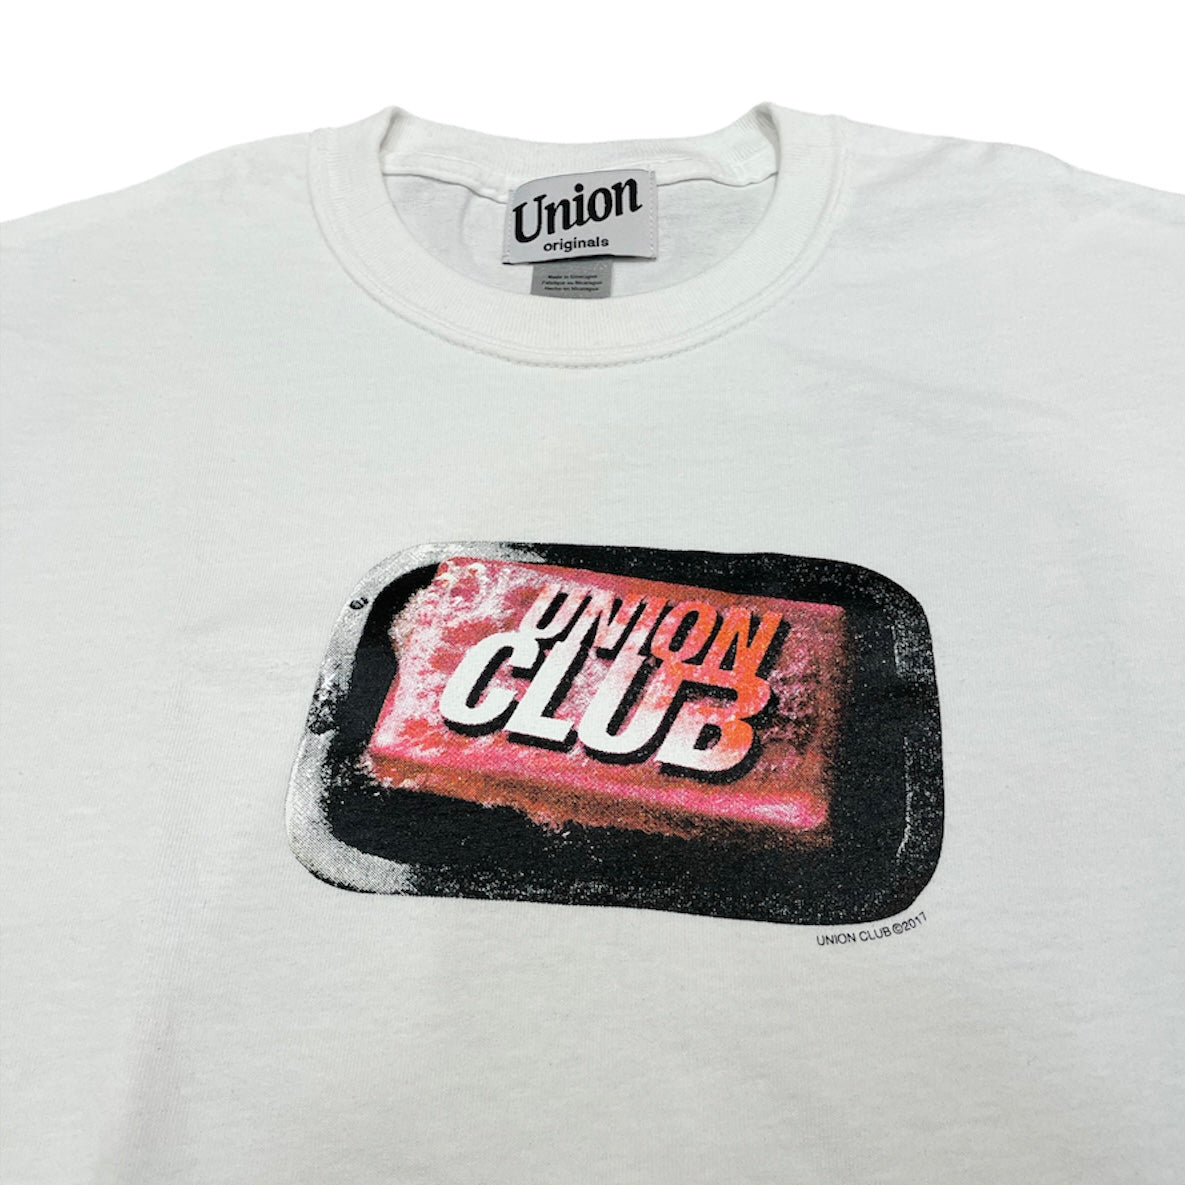 【UNION originals - ユニオンオリジナルス】Union Club T-shirt / White (Tシャツ/ホワイト)